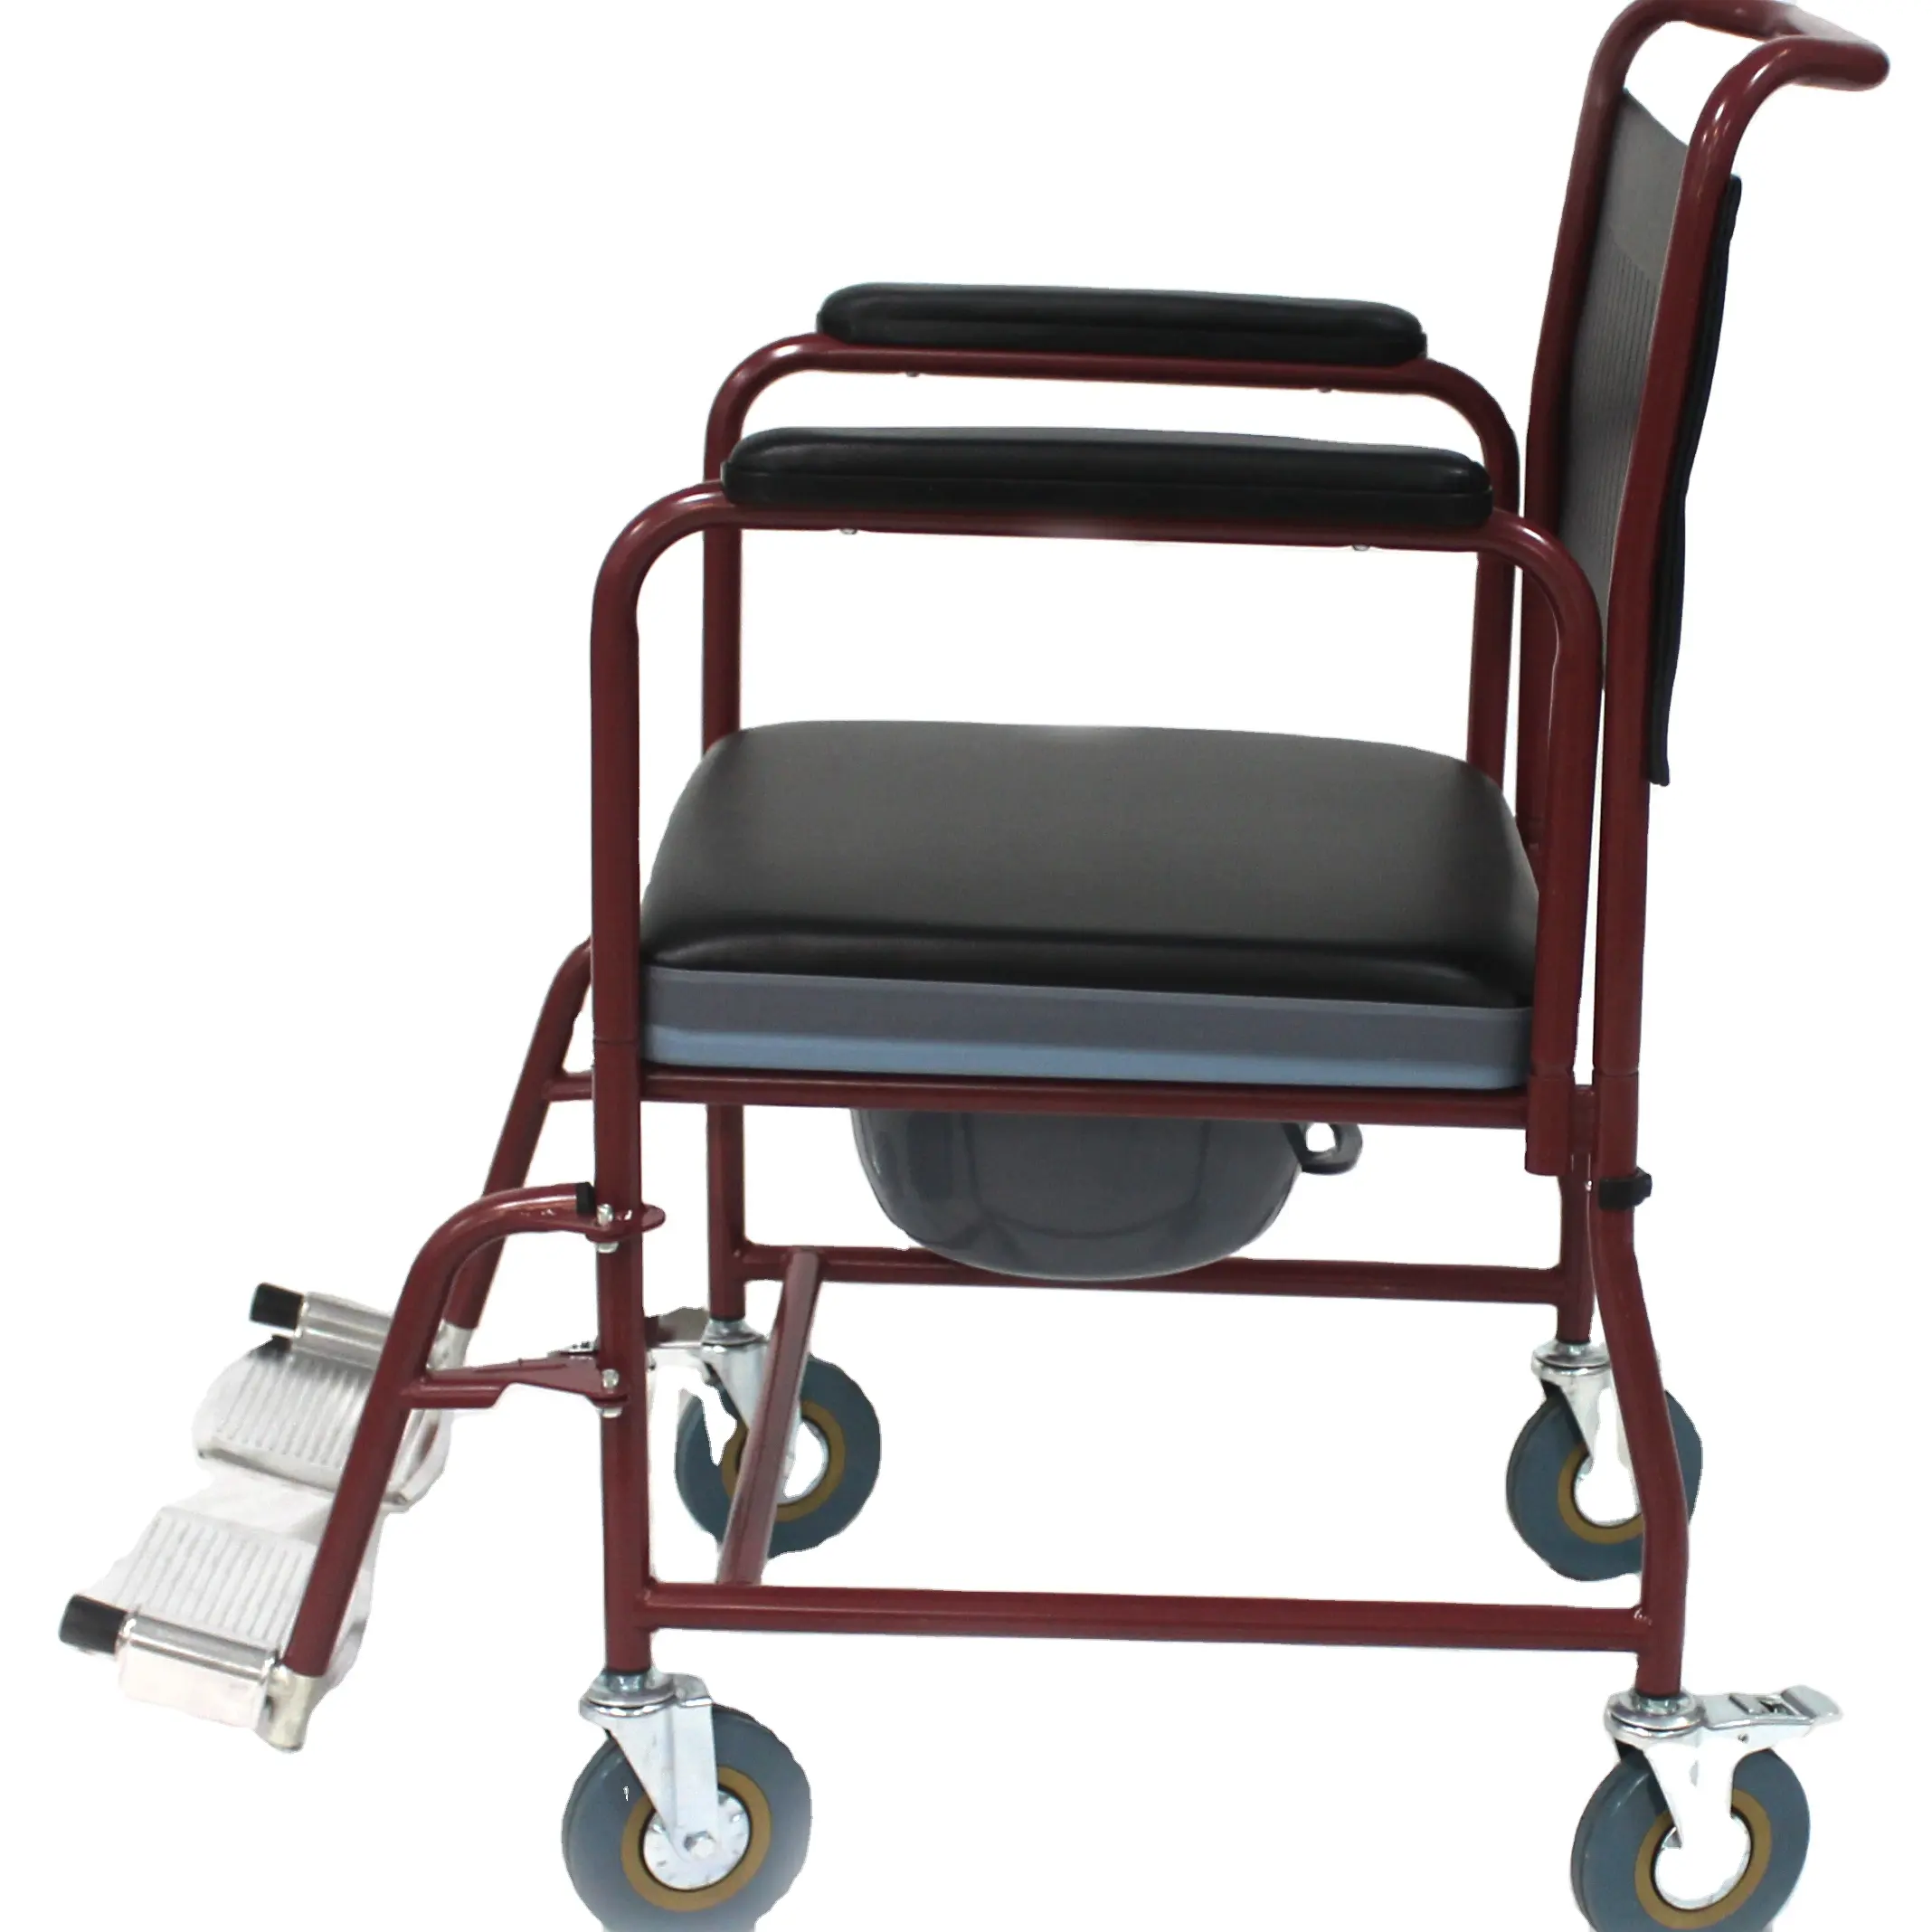 كرسي صولجان بأحدث طراز ، للبالغين, كرسي صولجان بتصميم كرسي متحرك ، كراسي المستشفيات ، الحمام ، الدراجات ثلاثية العجلات الأخرى ، معدات البالغين المعاقين